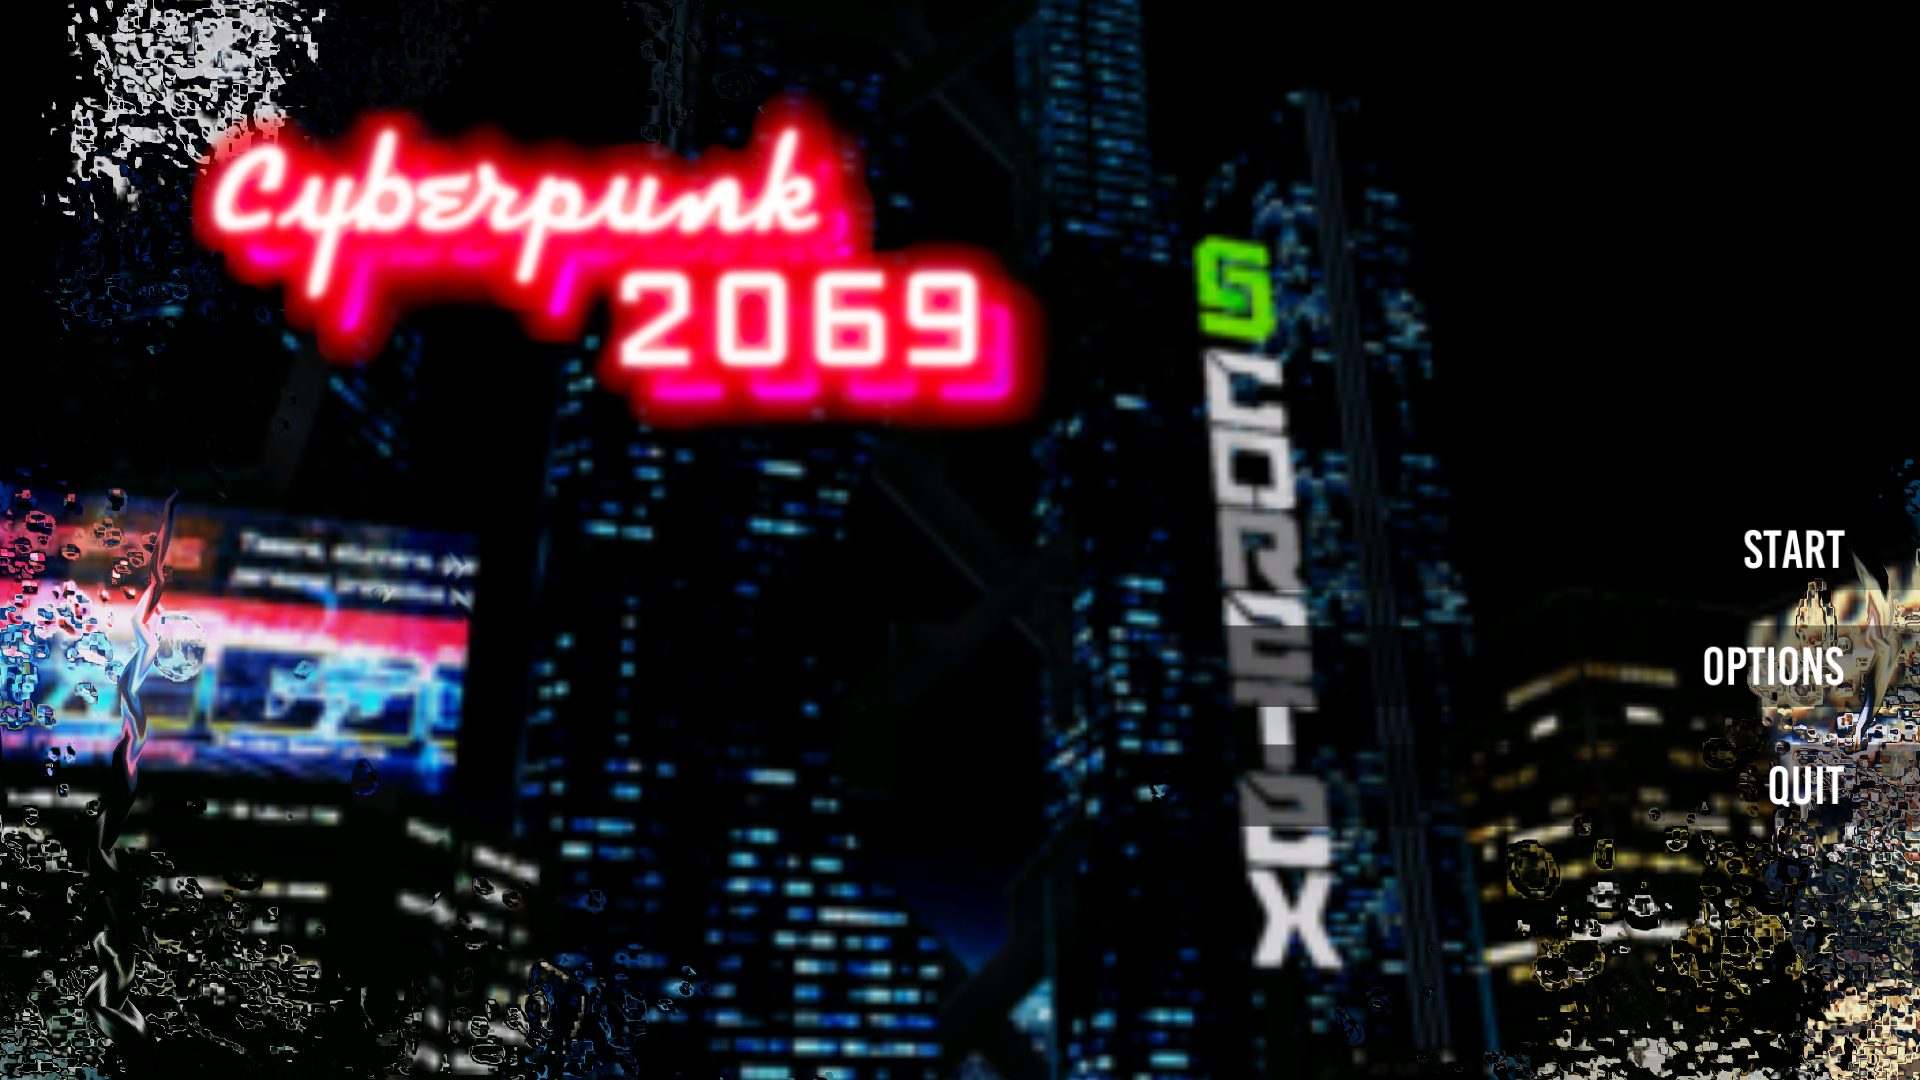 Cyberpunk 2069 обзор фото 27